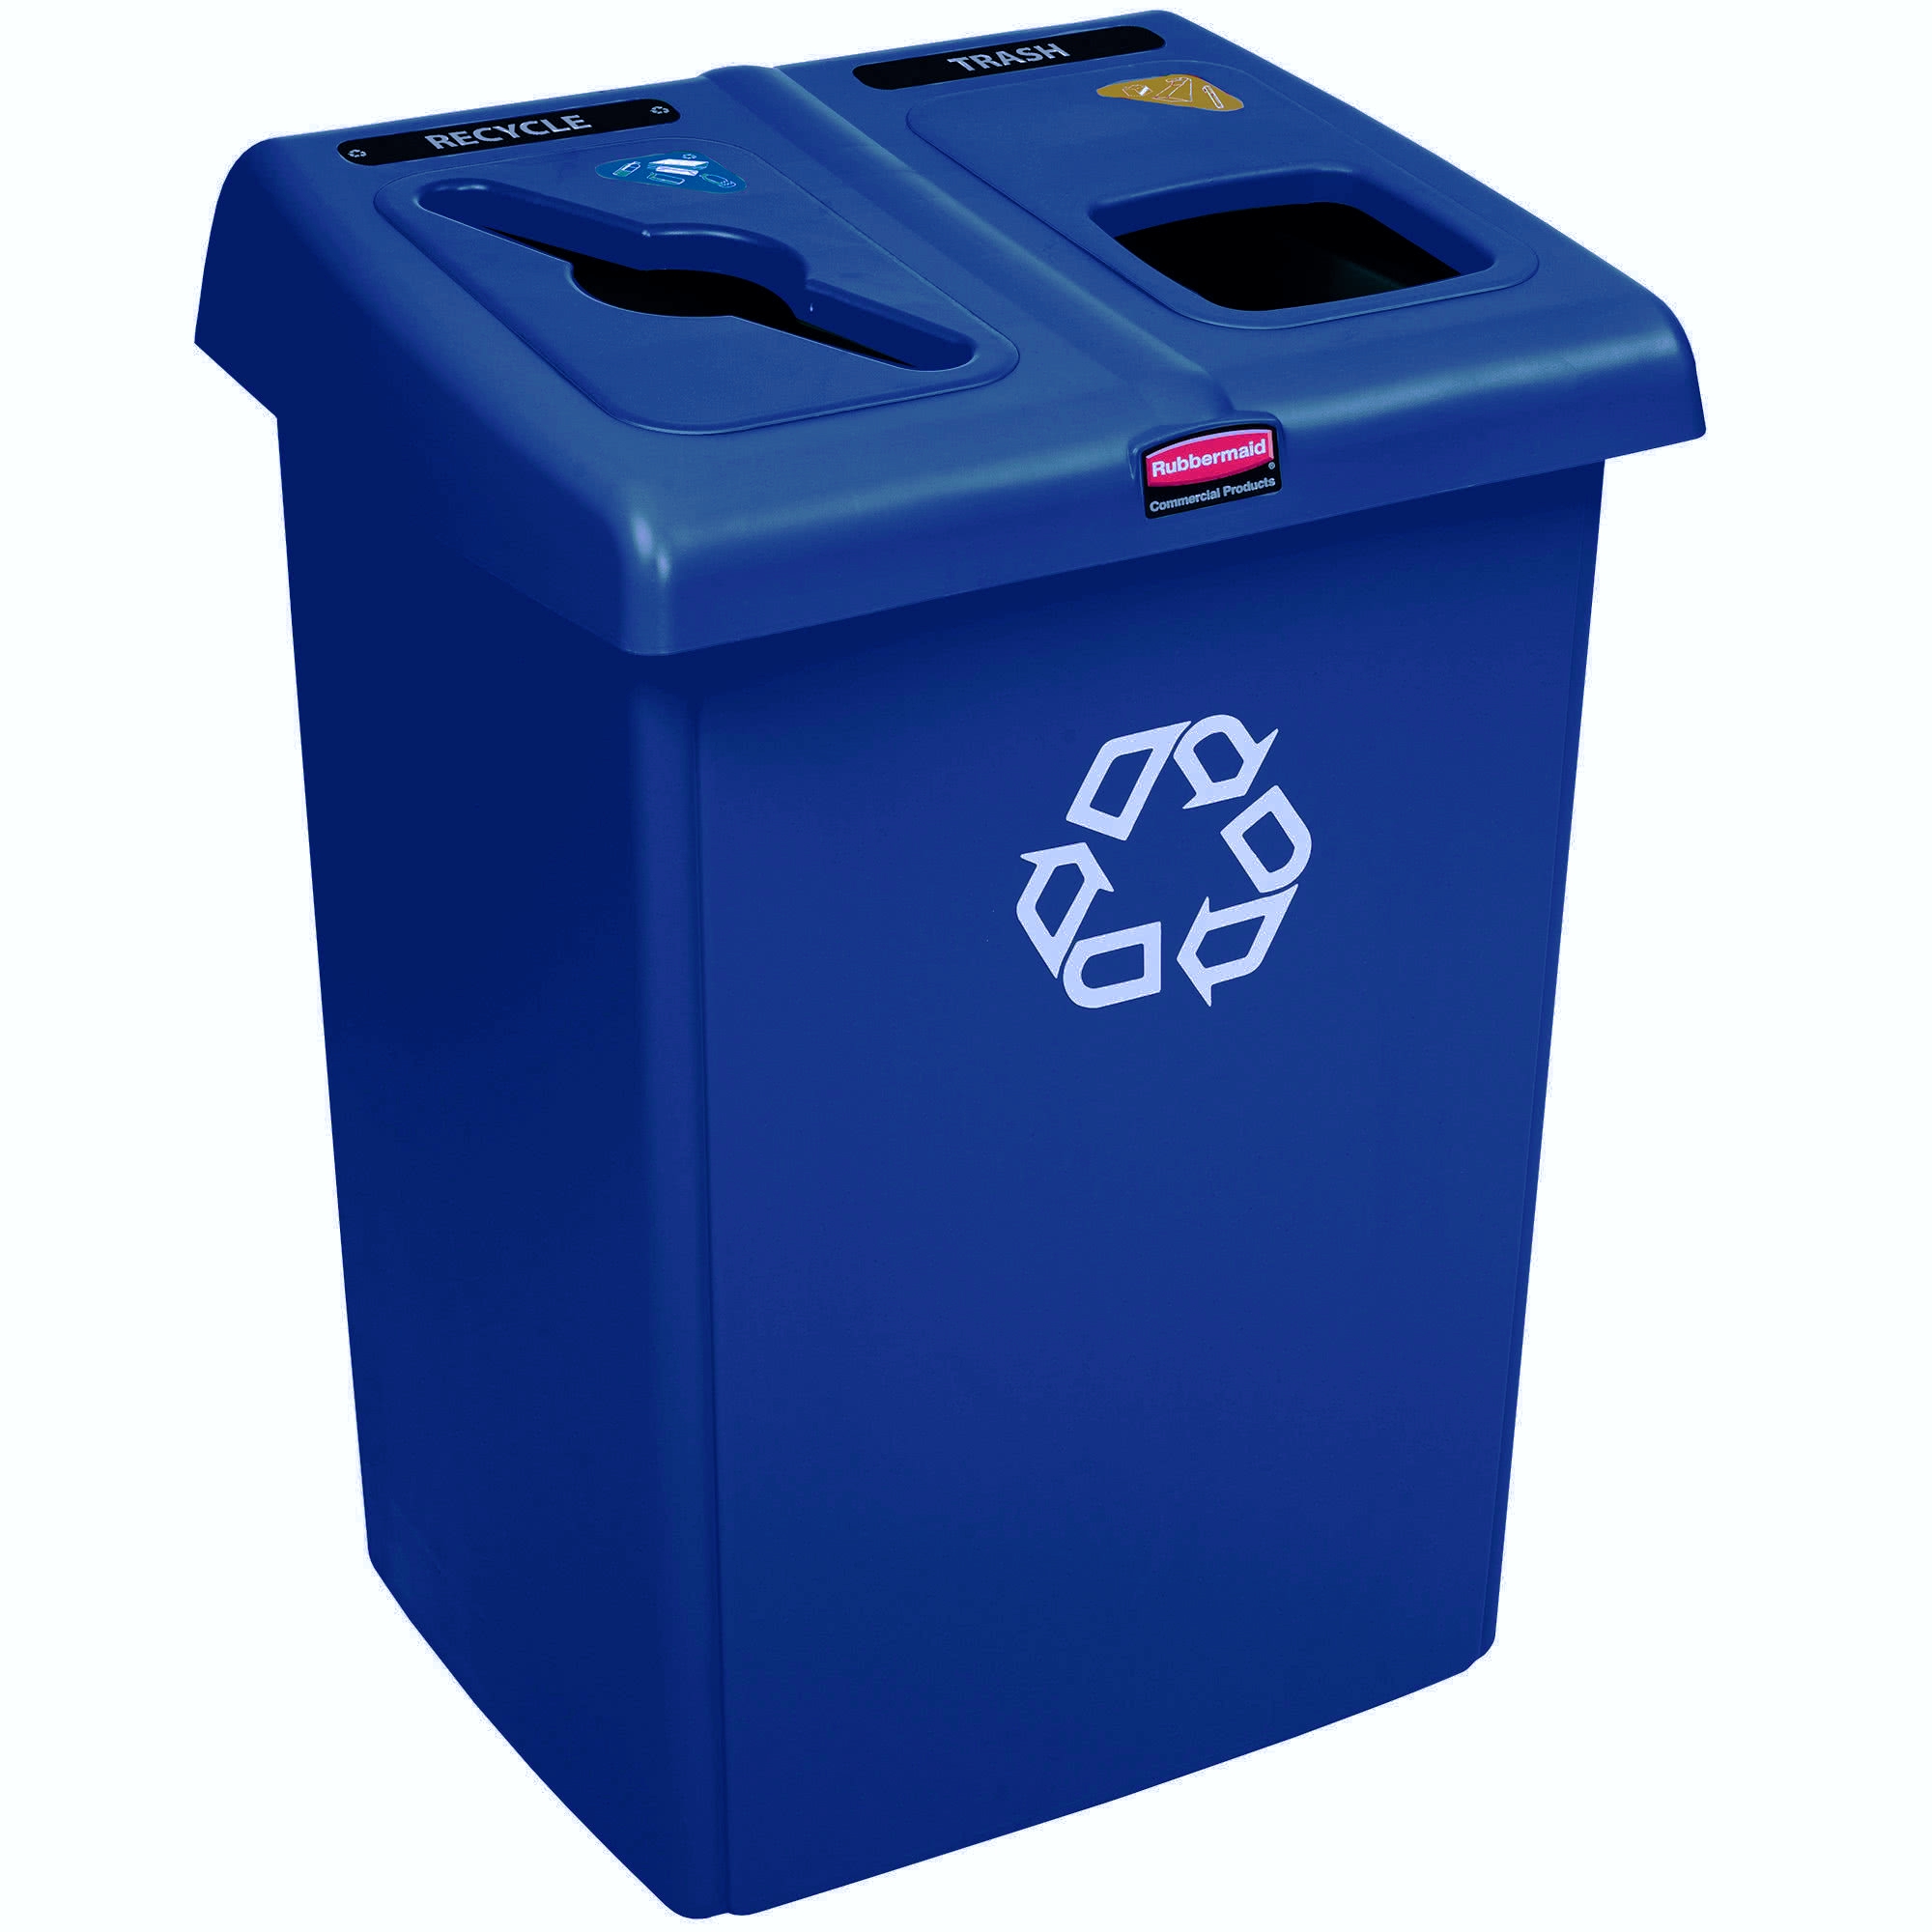 Rubbermaid 1792339 estación de reciclaje Glutton de 46 galones capaz de separar hasta 2 corrientes de desechos, color azul